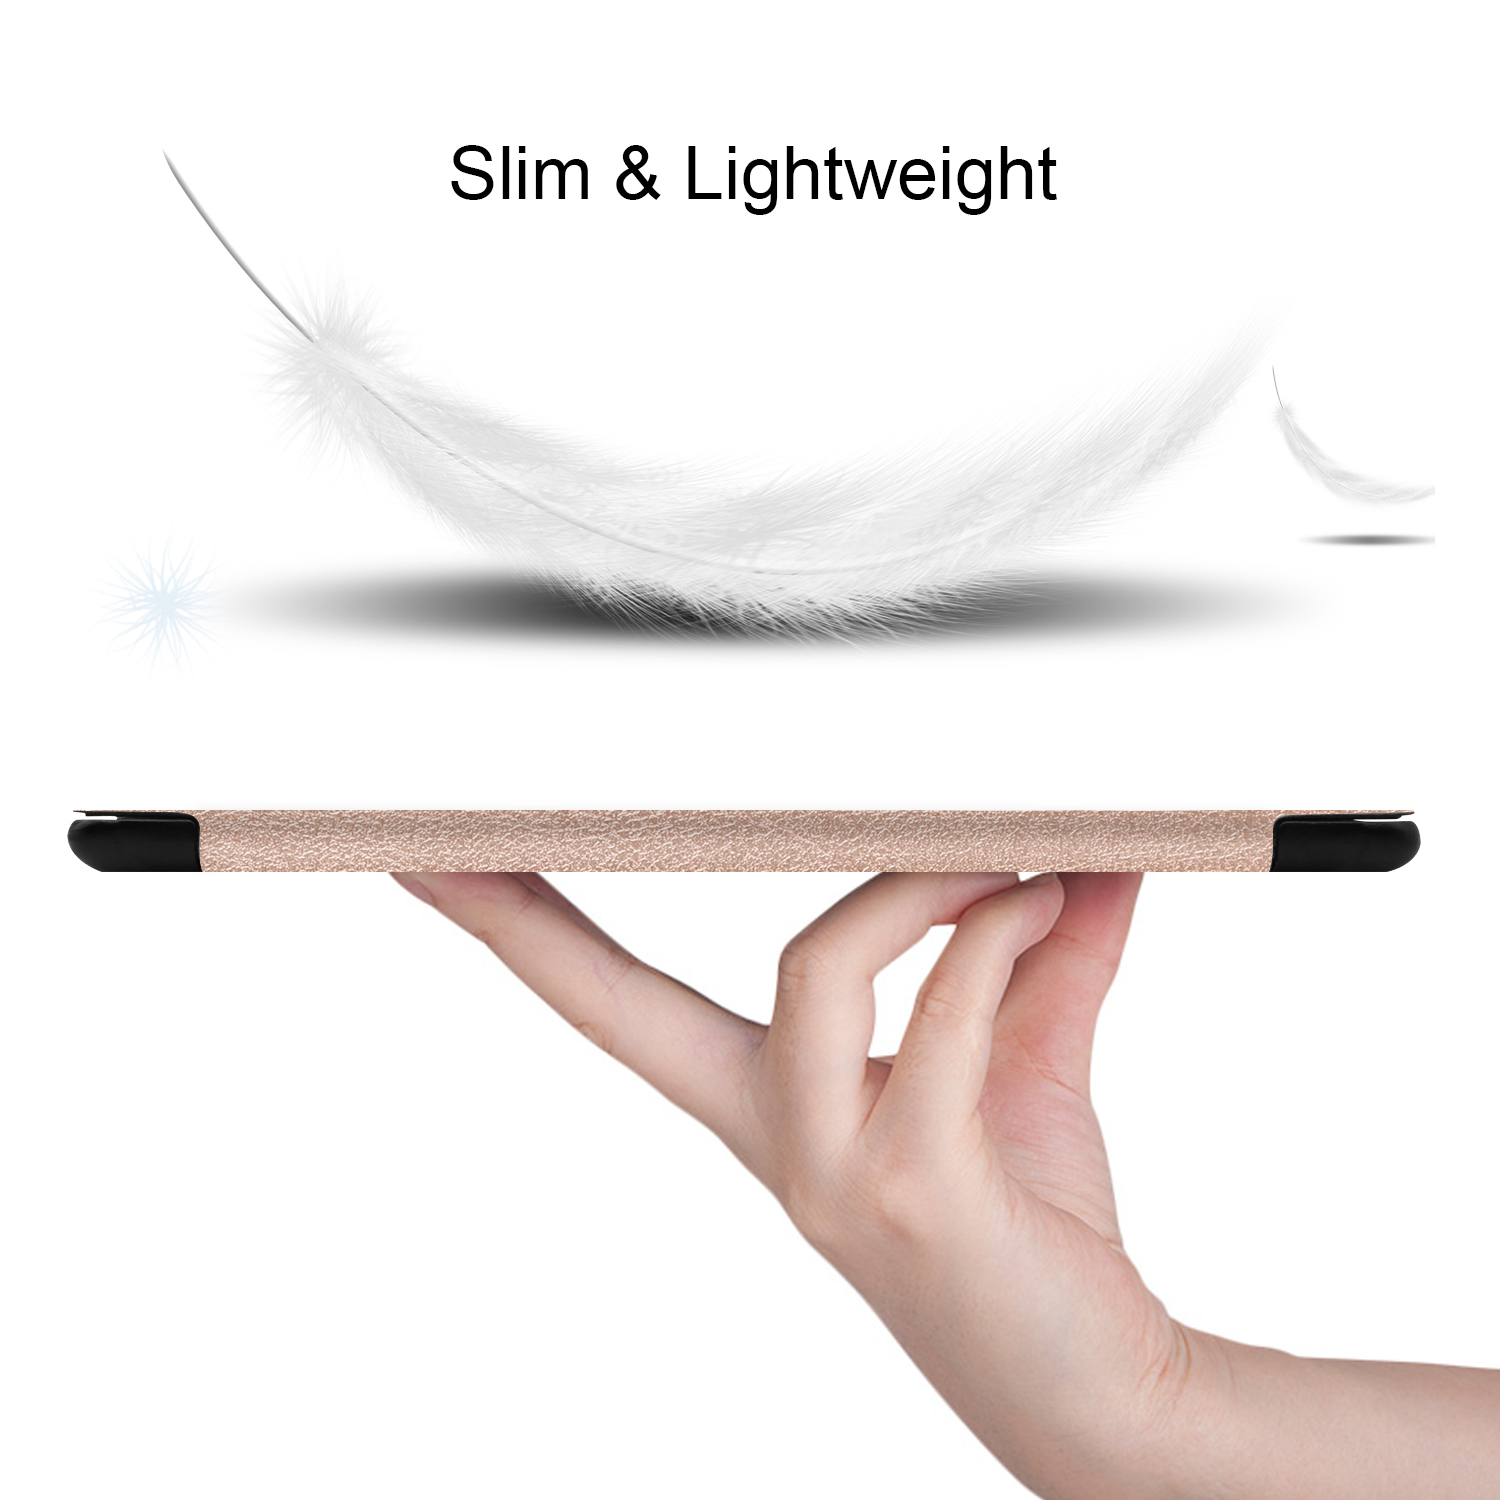 Läderfodral, Samsung Galaxy Tab A 10.1 (2019), roséguld